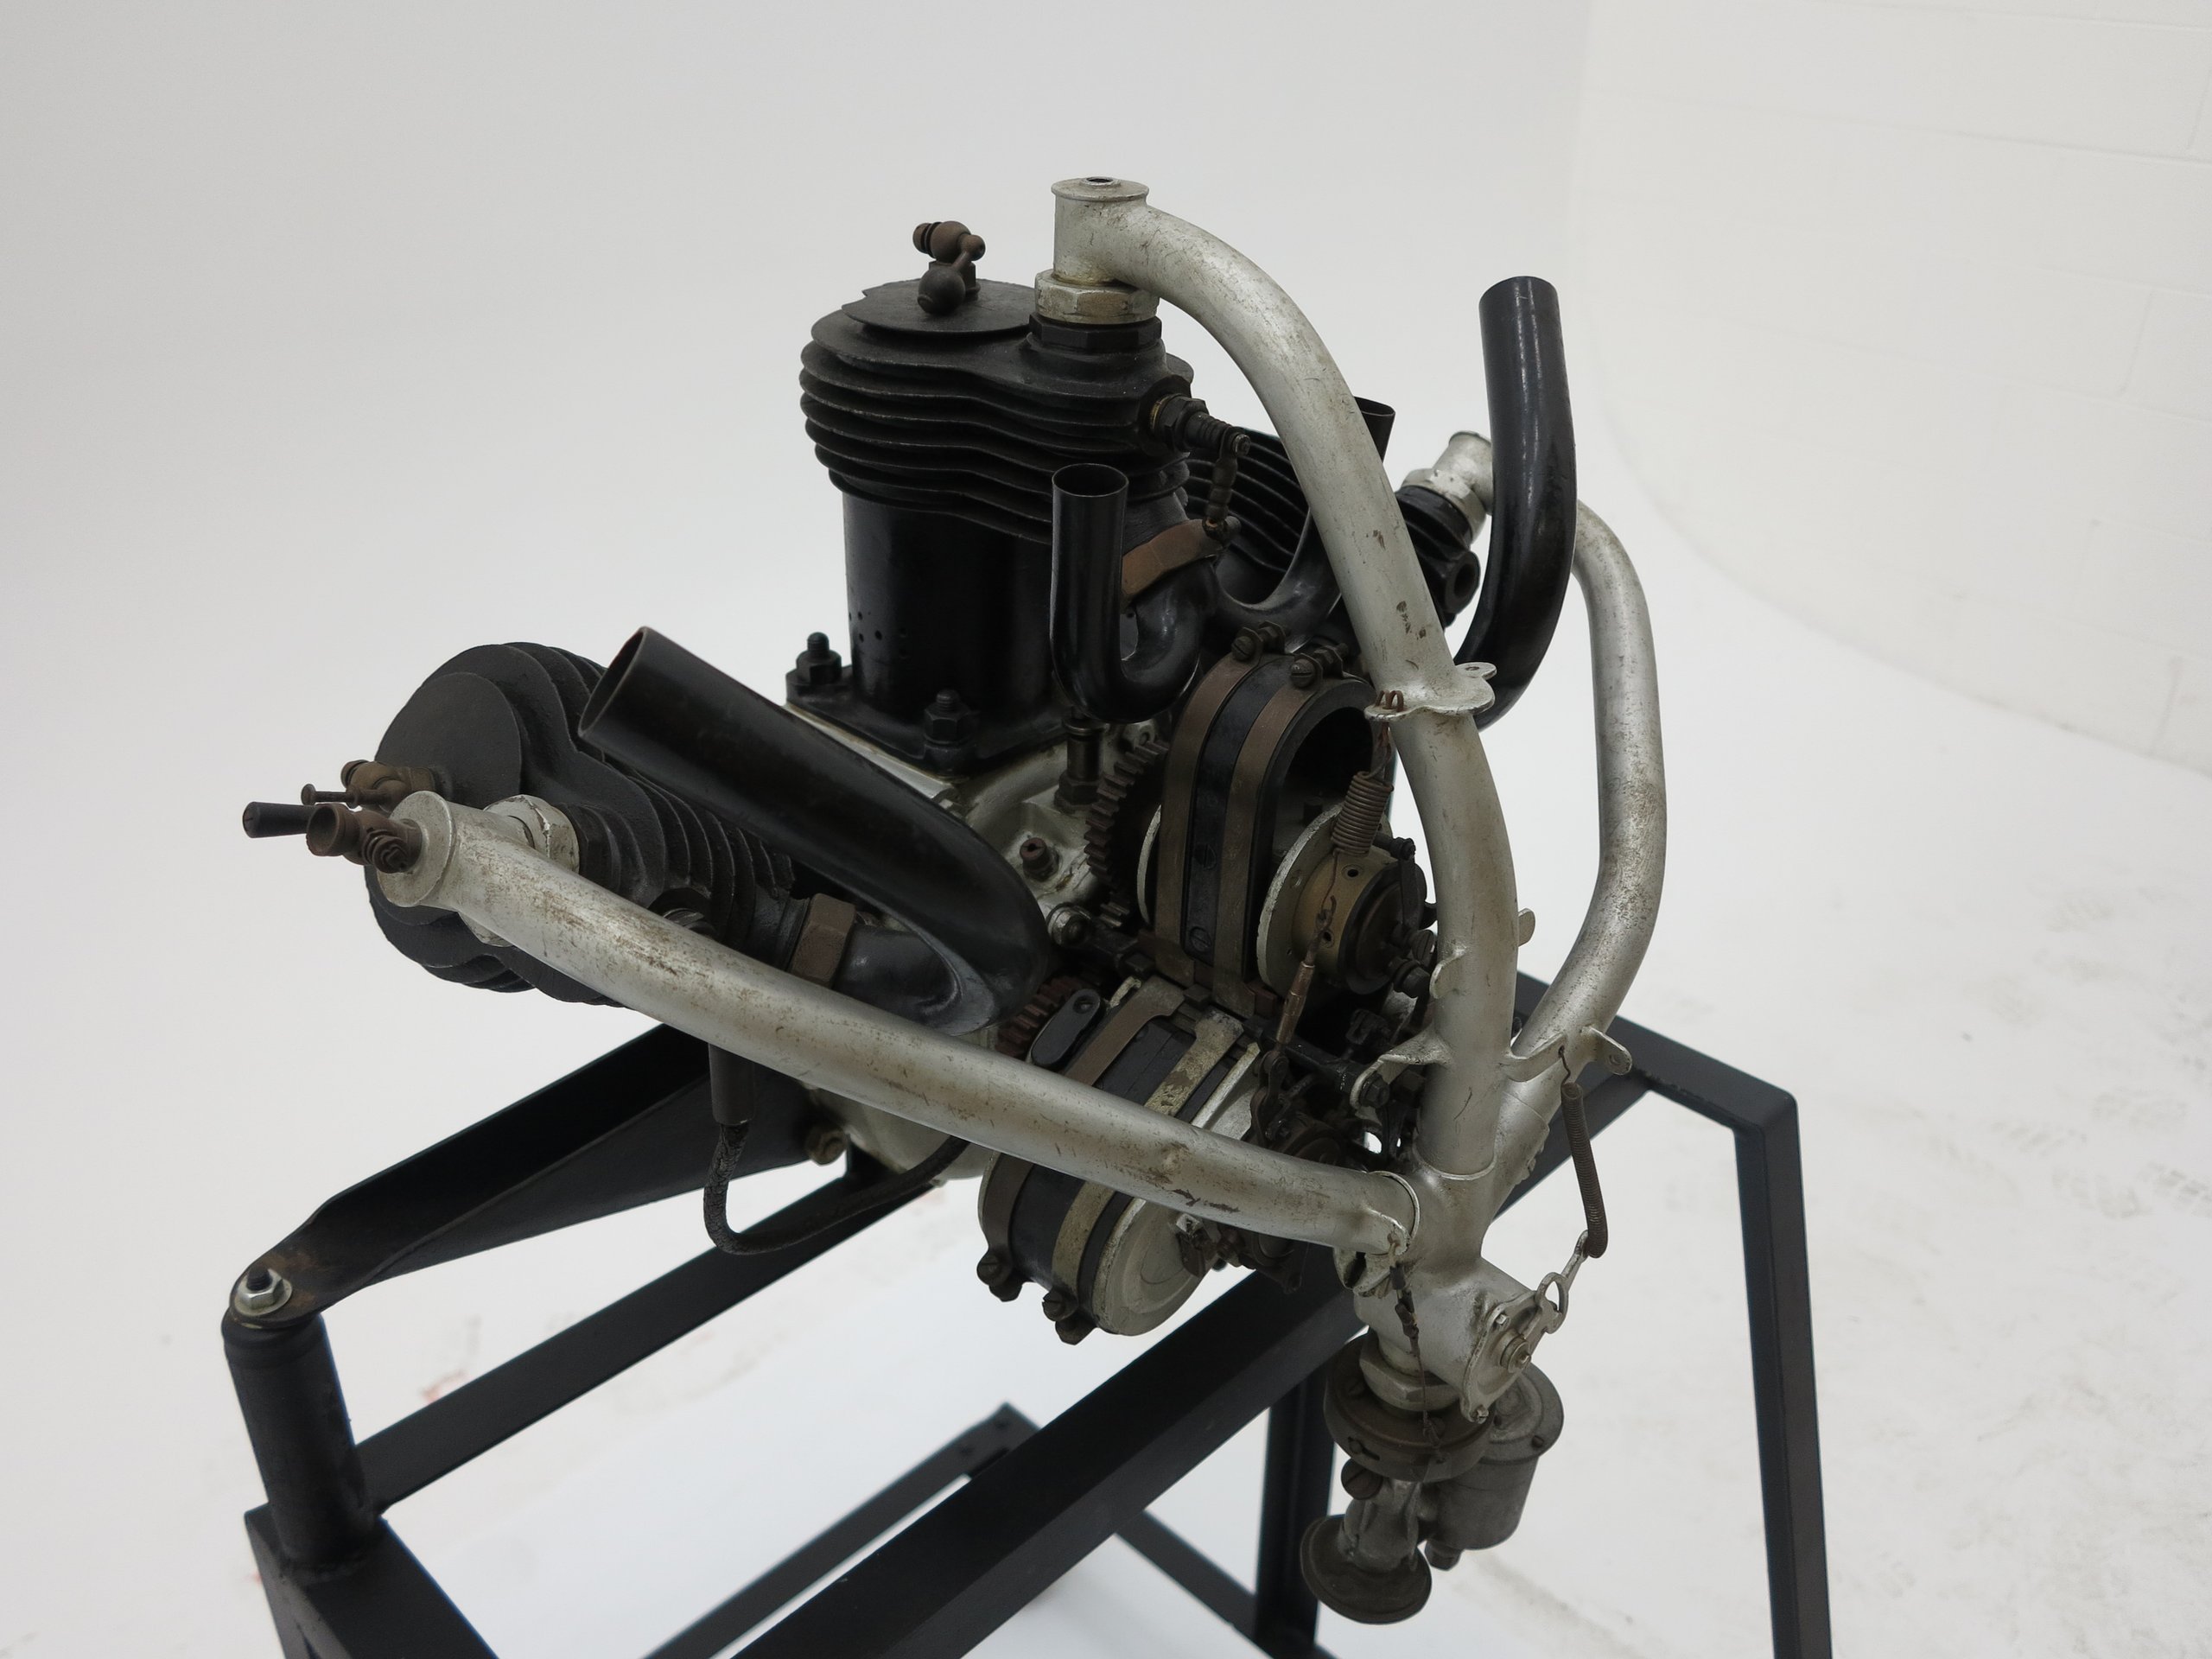 Aero engine made by Alessandro Anzani